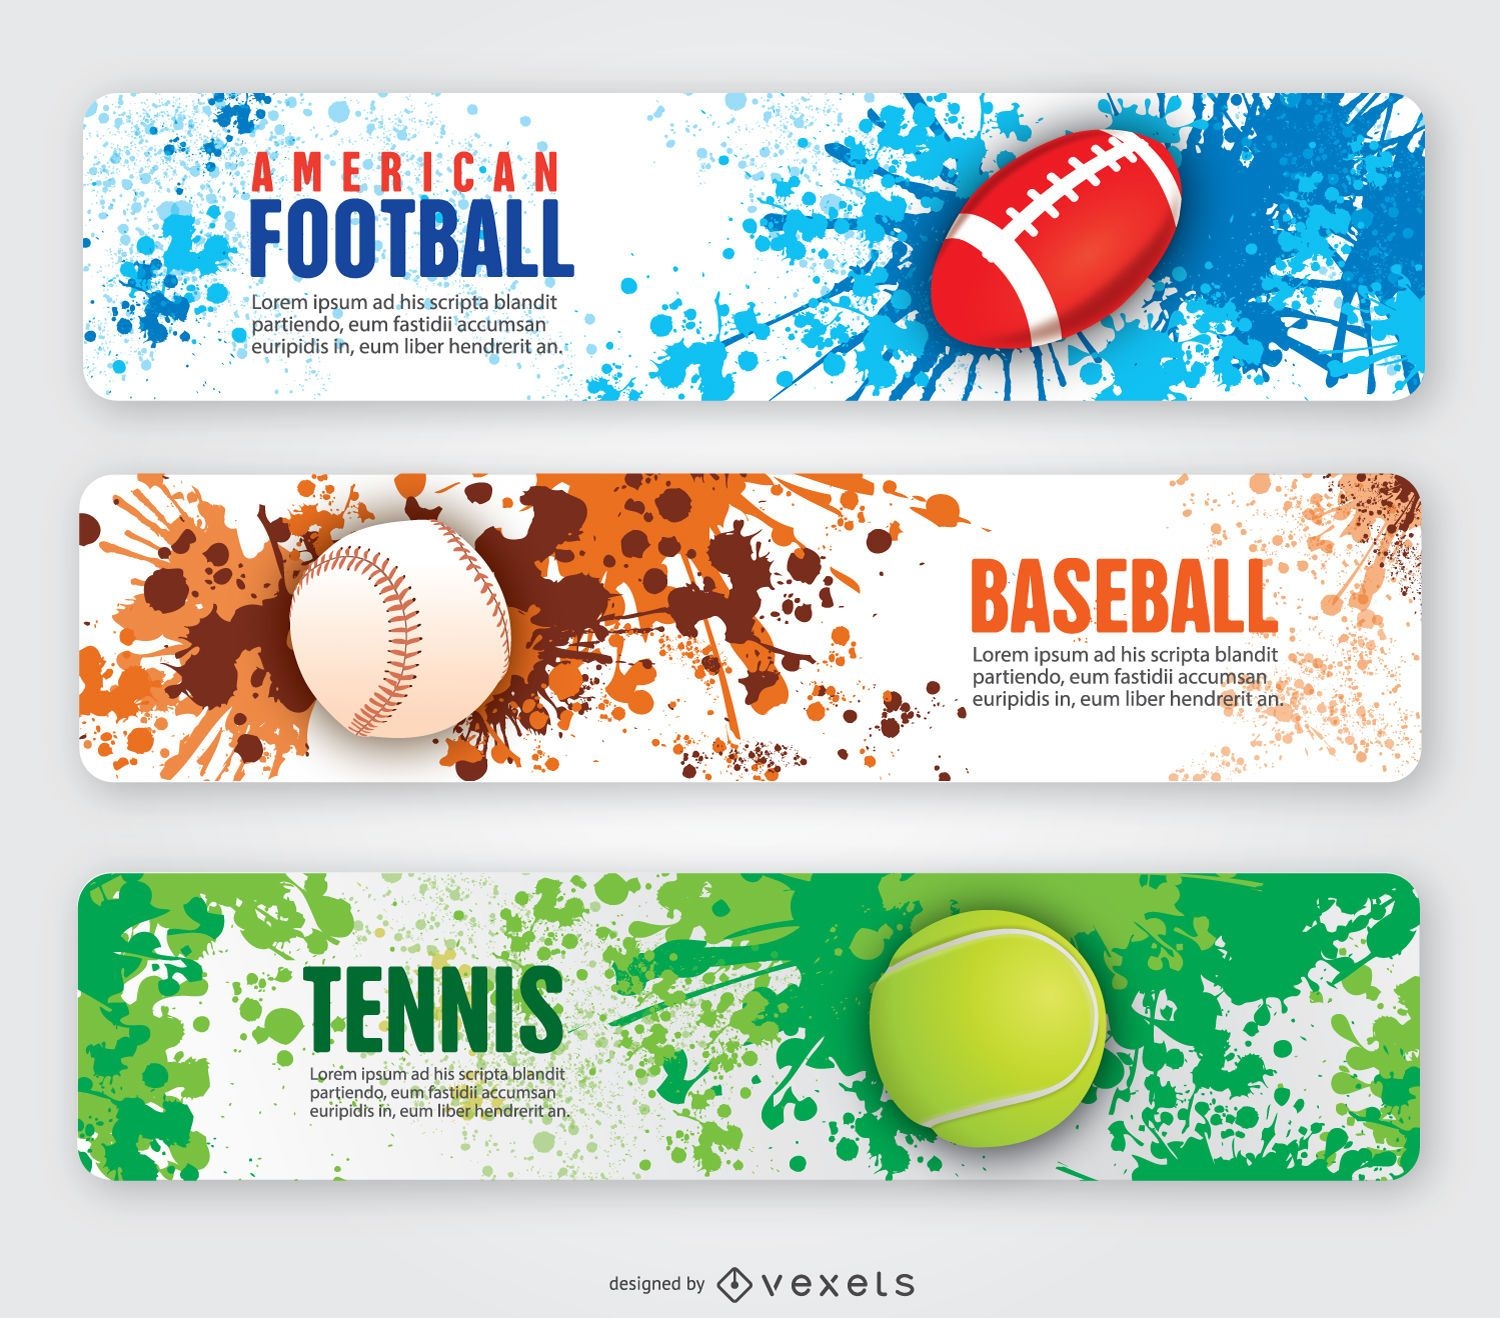 Banners de tenis y b?isbol de f?tbol americano